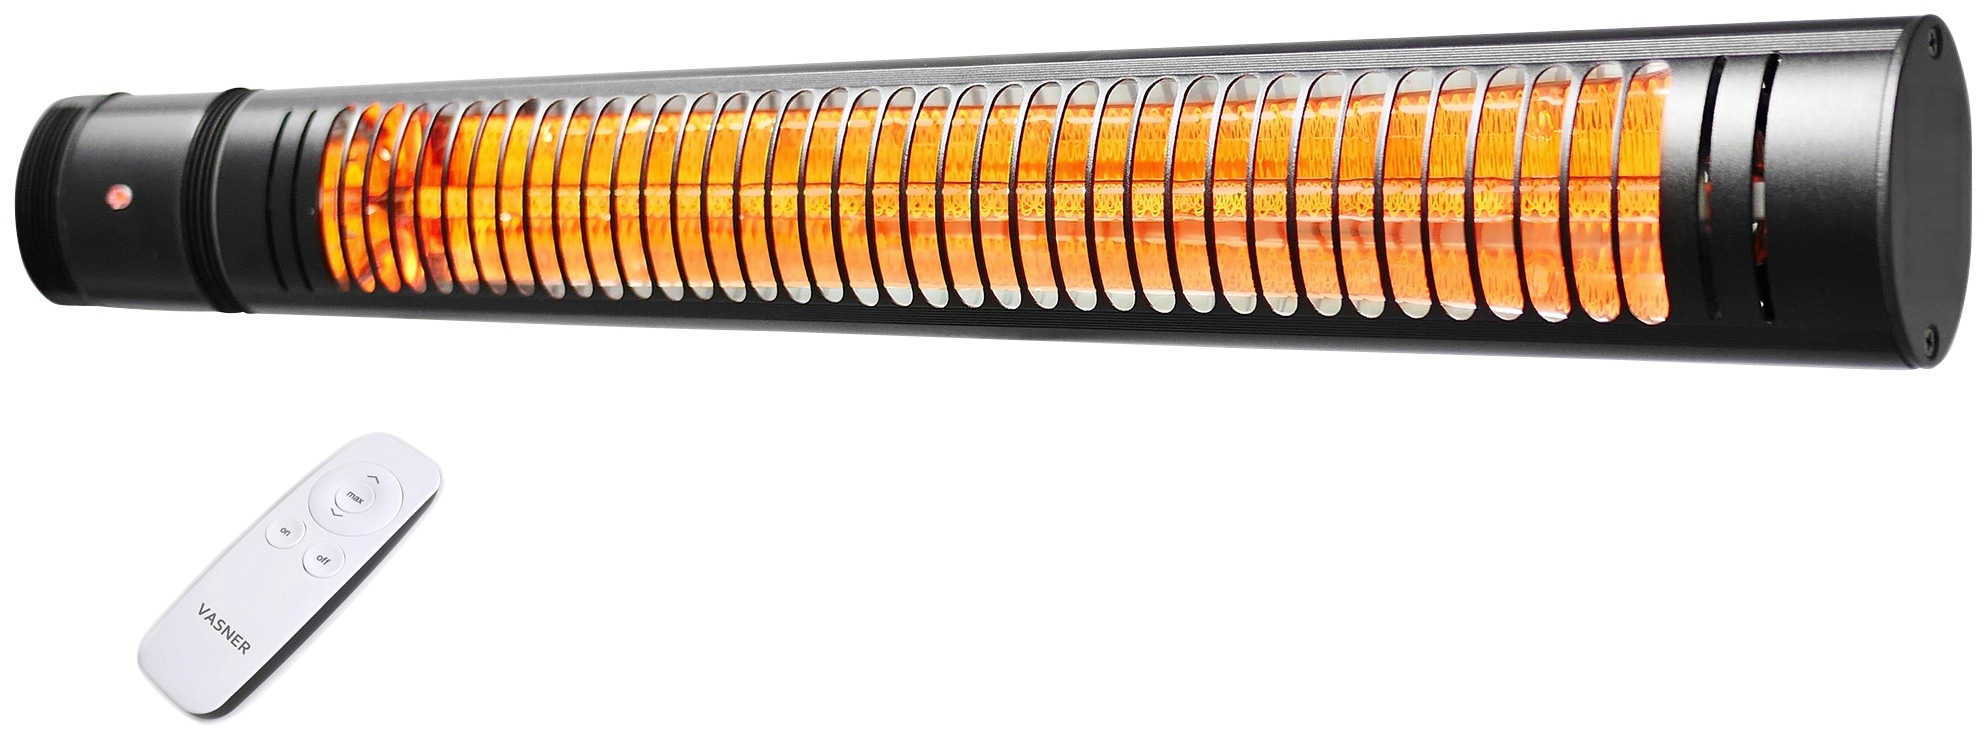 VASNER SlimLine X20 – Infrarotstrahler im Slim-Design, 2000 Watt Outdoor Heizstrahler, elektrischer Terrassenstrahler mit 5 Heizstufen & Fernbedienung, ideal für Terrasse & Außenbereich (Schwarz)